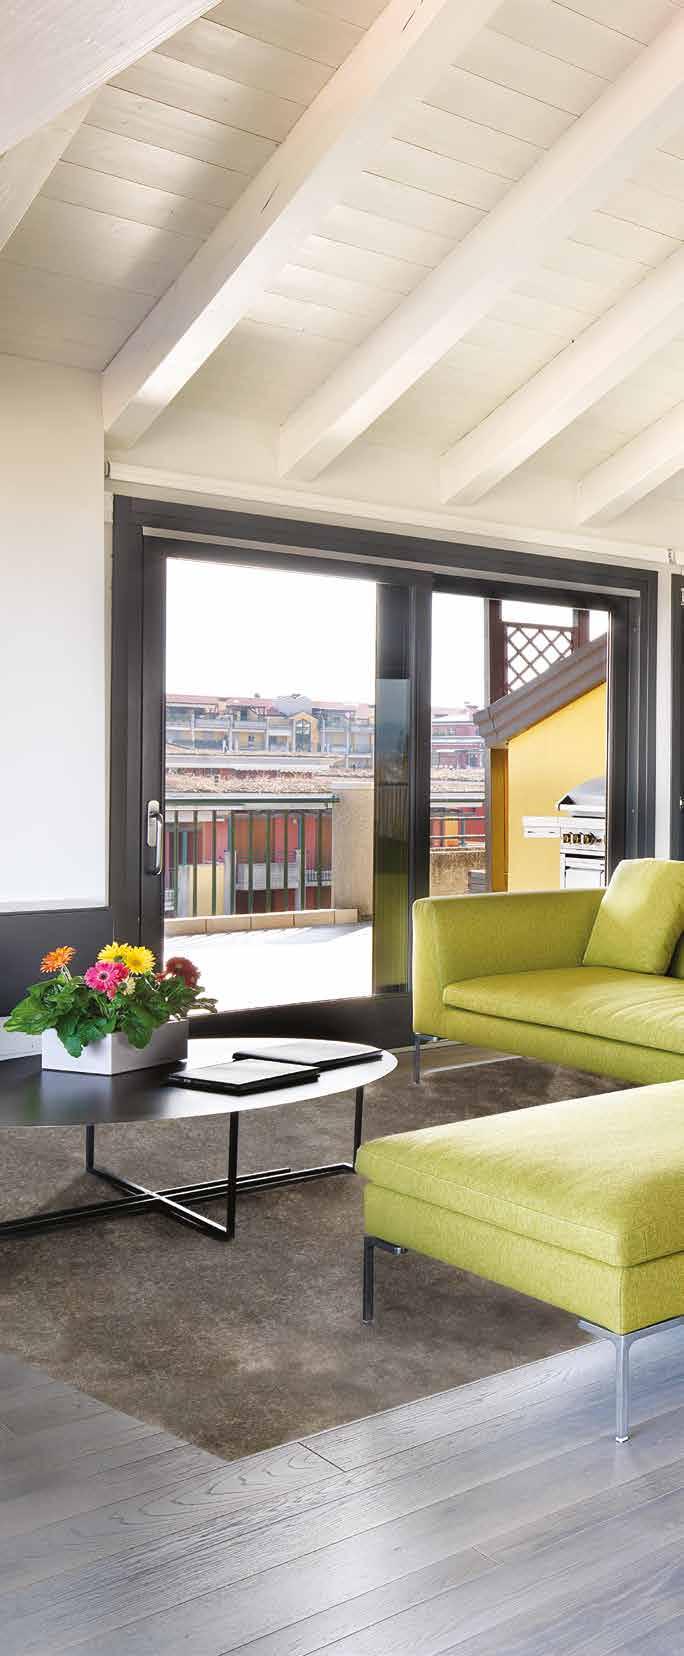 Affacciata su tre ampi terrazzi, la zona giorno è un arioso open space che gli arredi moderni suddividono nelle aree del living, con divano in tessuto giallo lime e tavolo da pranzo con piano in